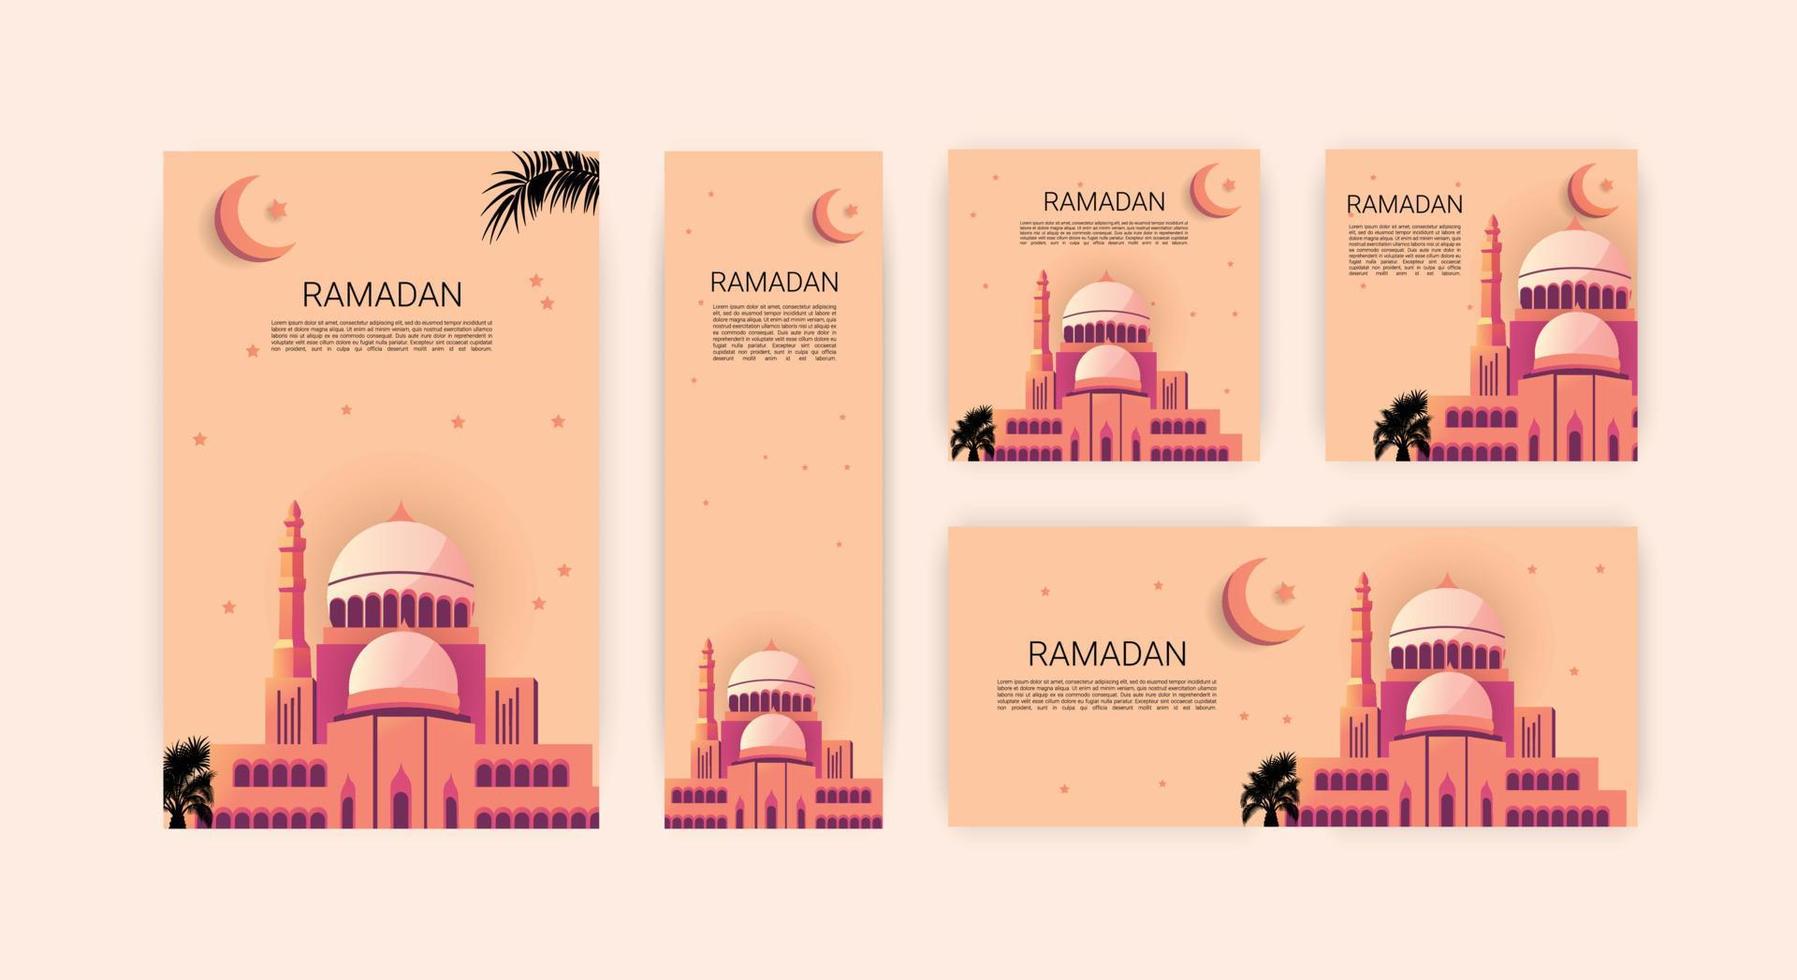 Ramadan Gruß Karte Design feiern islamisch Festival mit froh, sentimental, und herzerwärmend Karten perfekt zum Teilen Segen und Liebe mit Familie, Freunde, und Gemeinschaft vektor